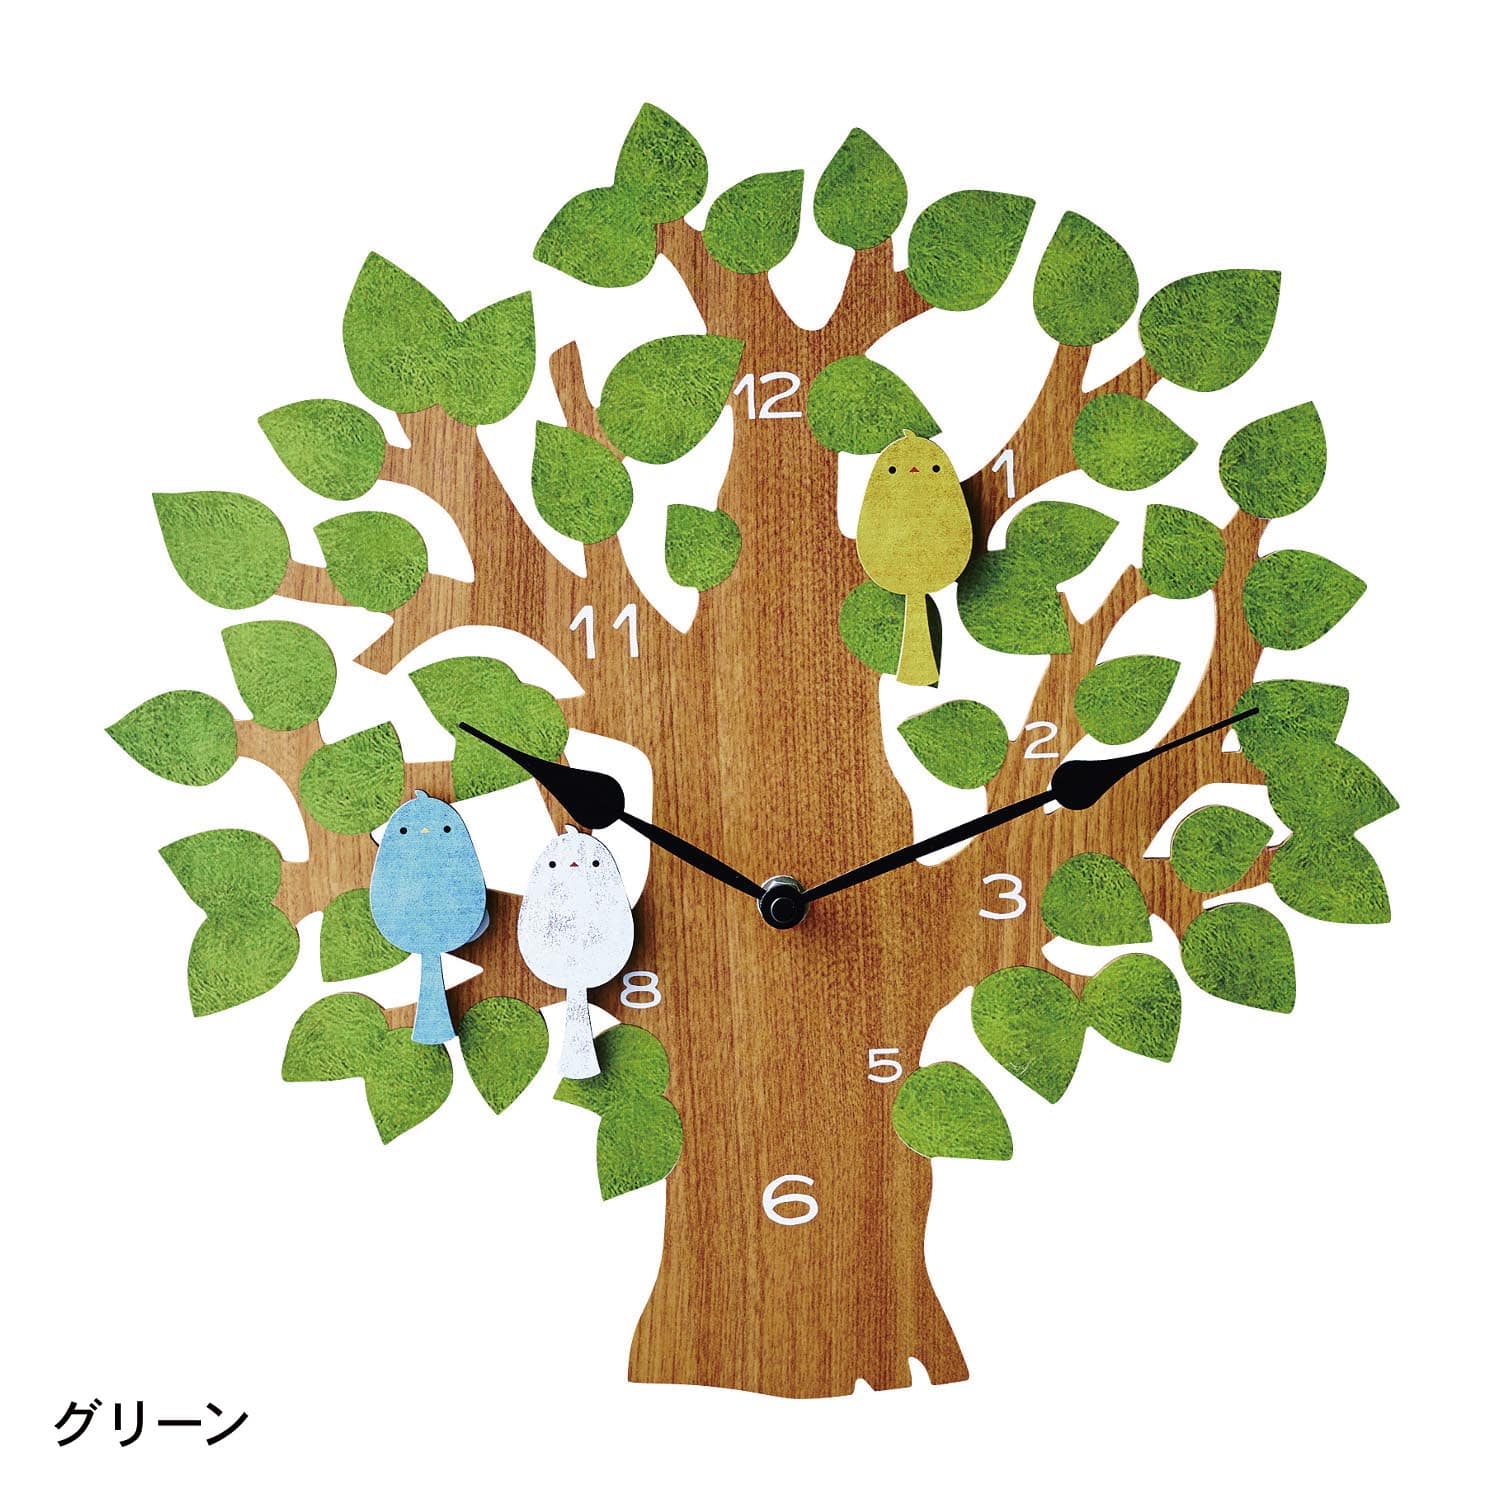 ベルメゾン 鳥の振り子が可愛い壁掛け時計「トゥルル」 グリーン 